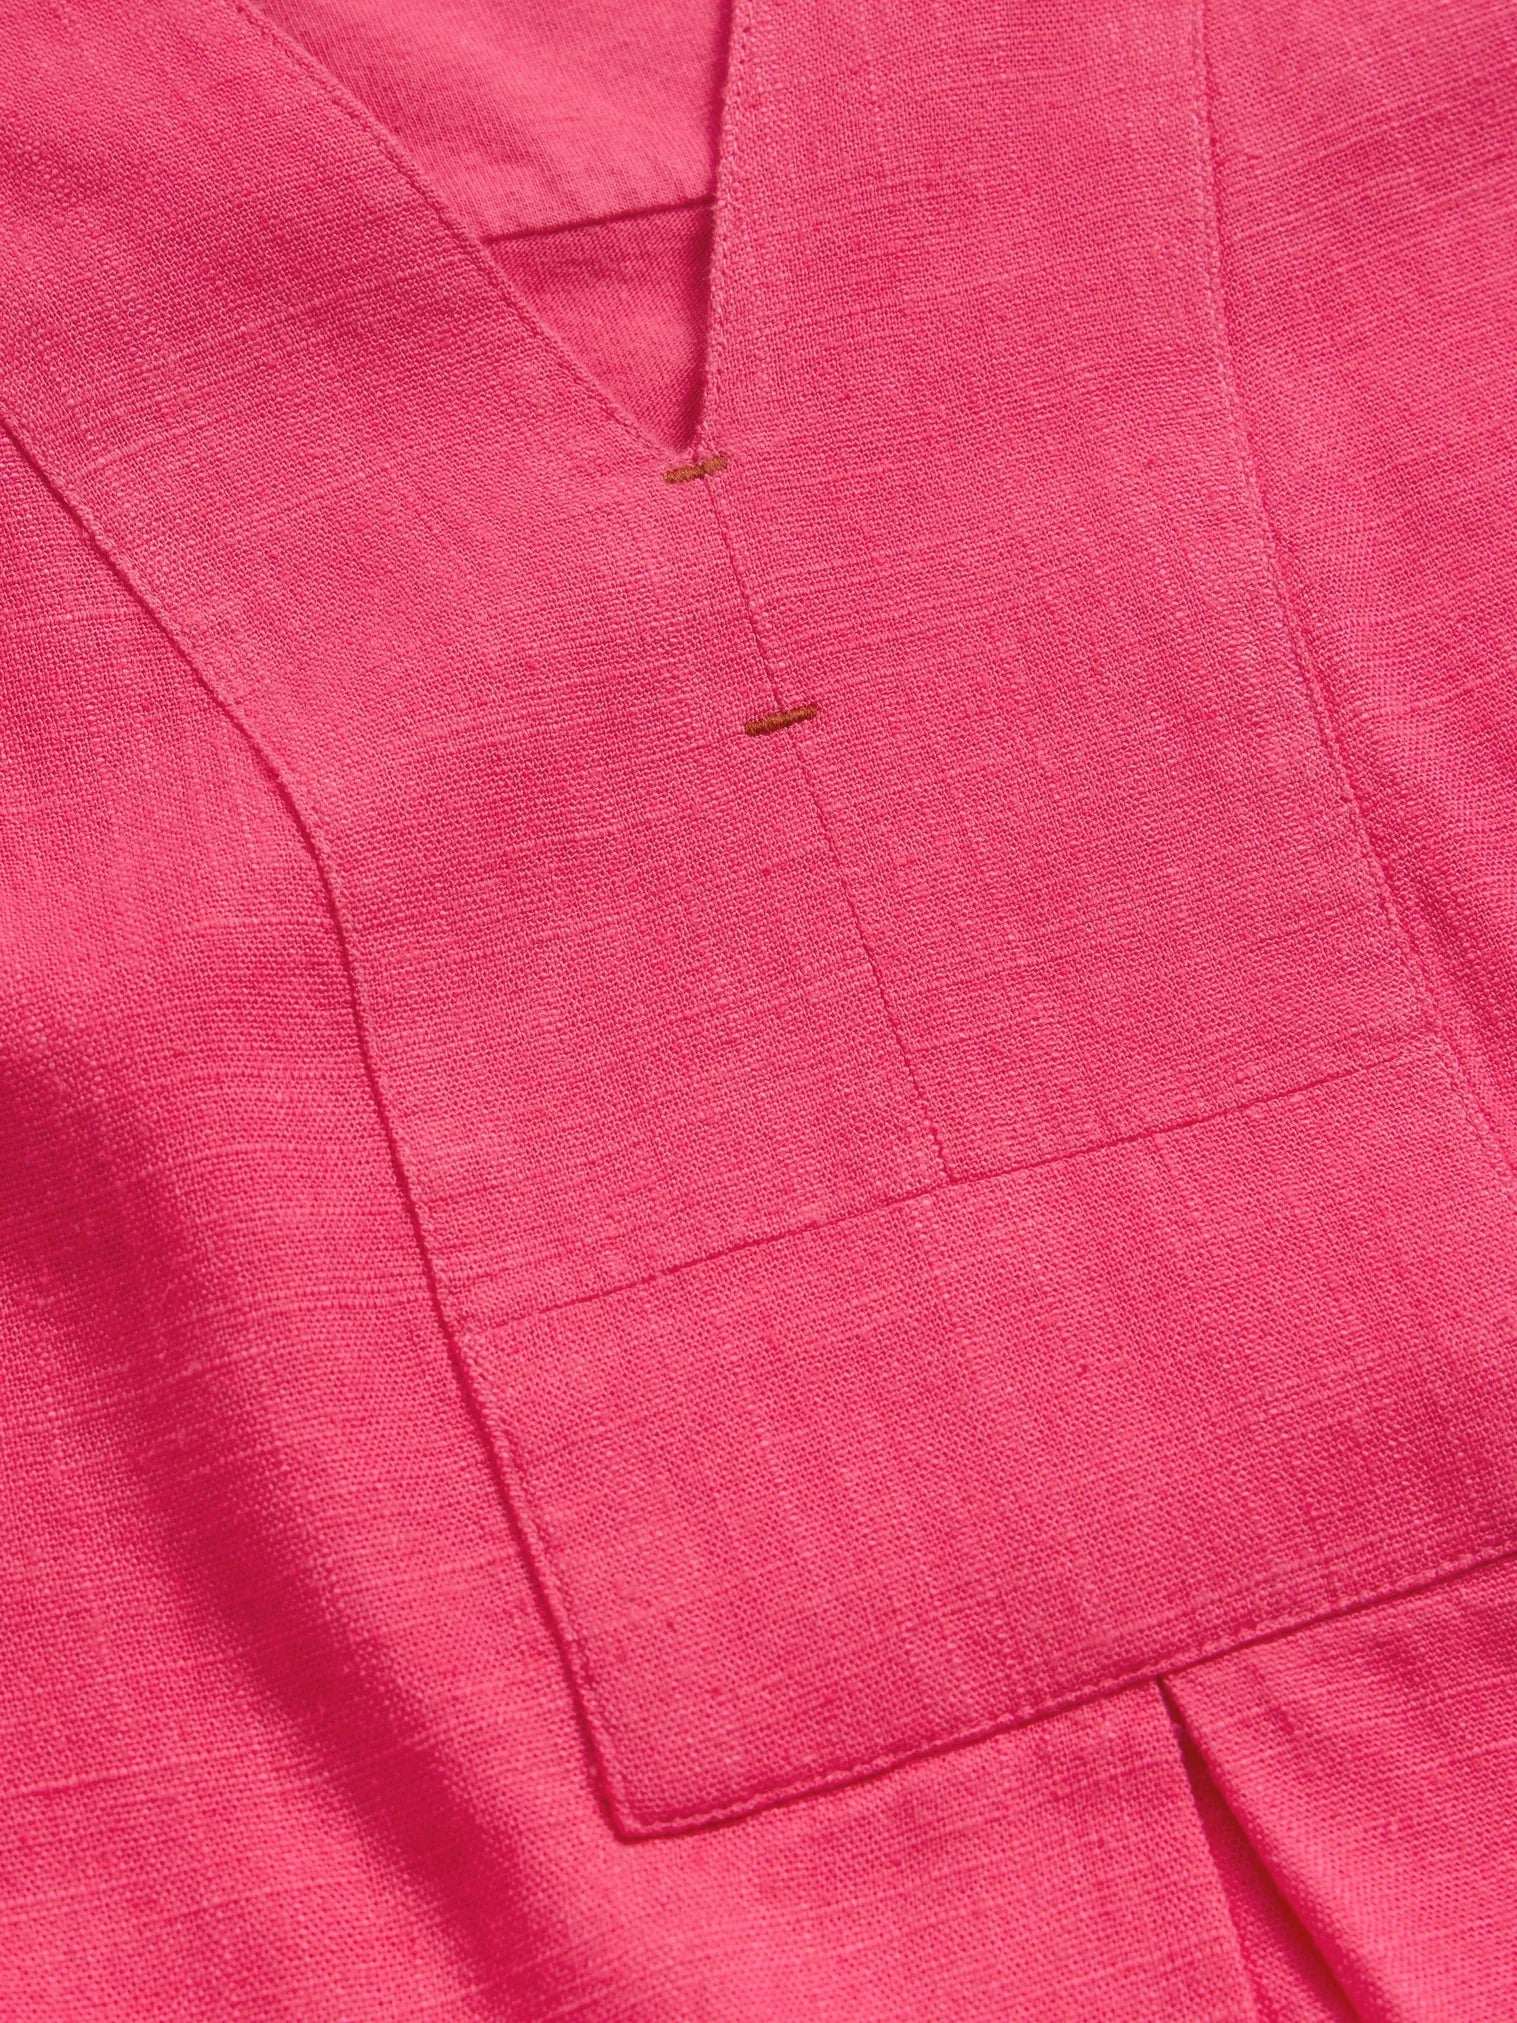 White Stuff Celia Jersey Mix Shirt Mid Pink